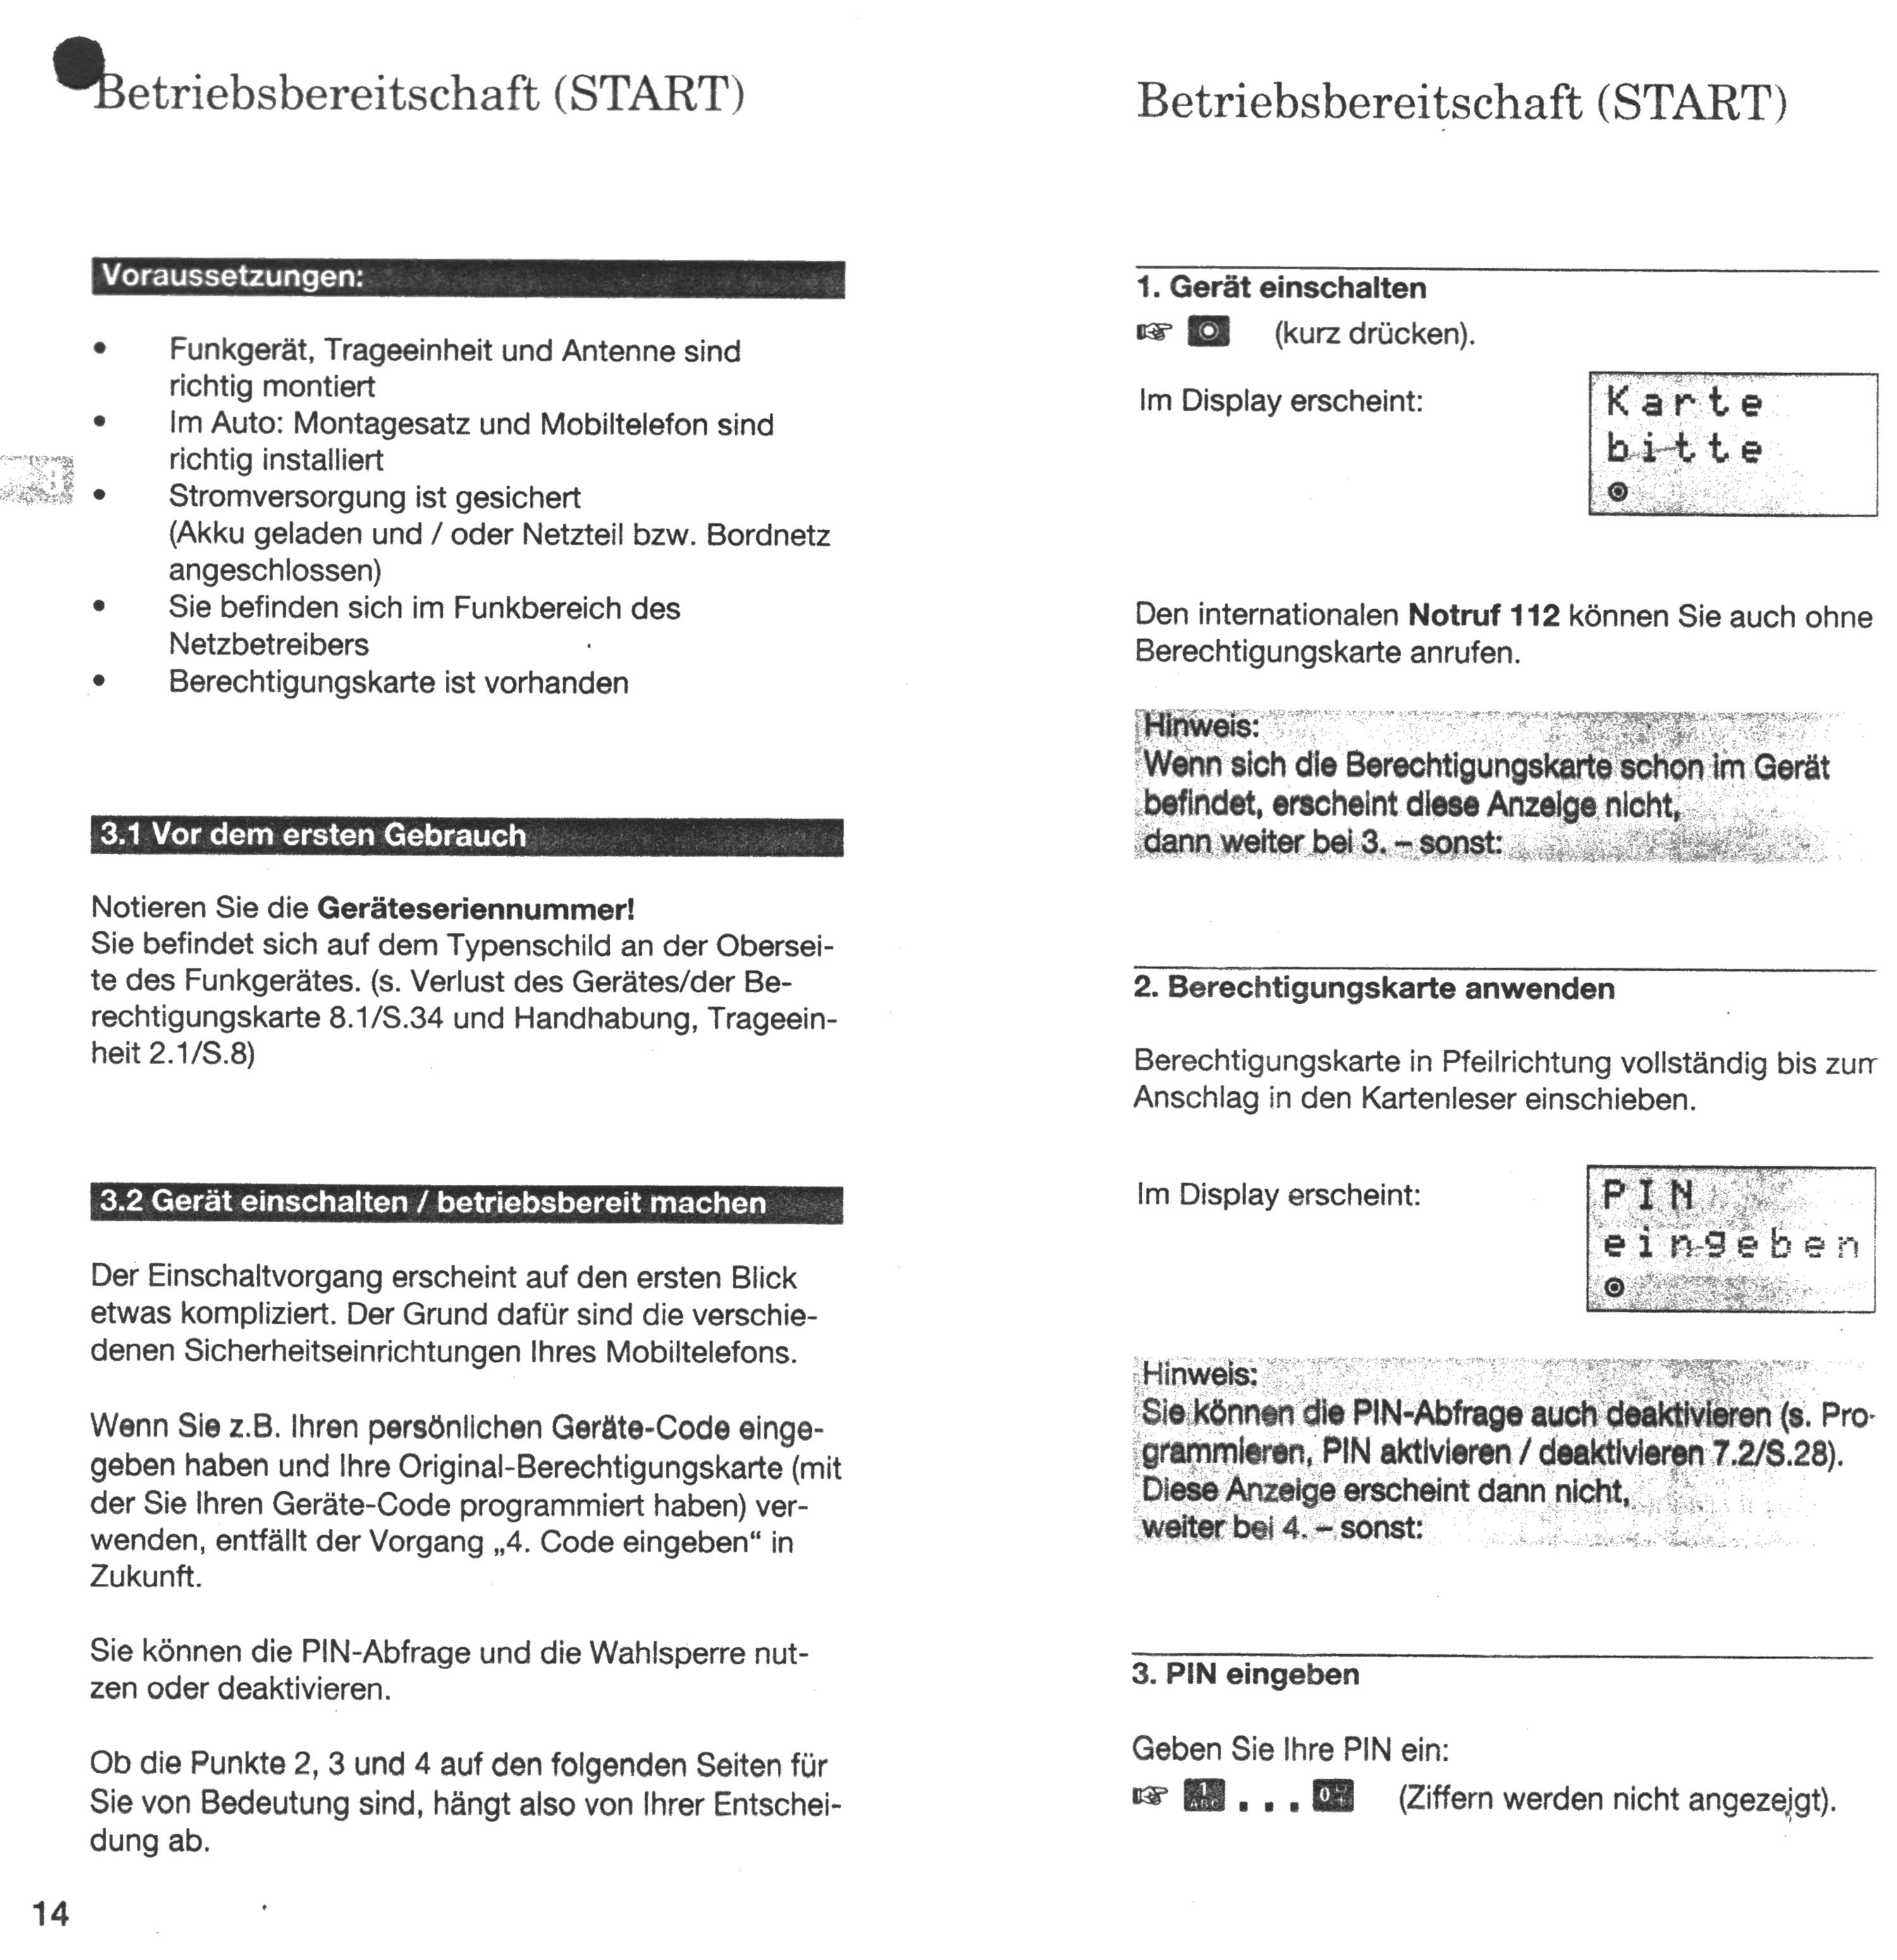 Bedienungsanleitung (deutsch) für Siemens P1 Mobiltelefon und Telekom D1-314 Autotelefon (Anleitung)